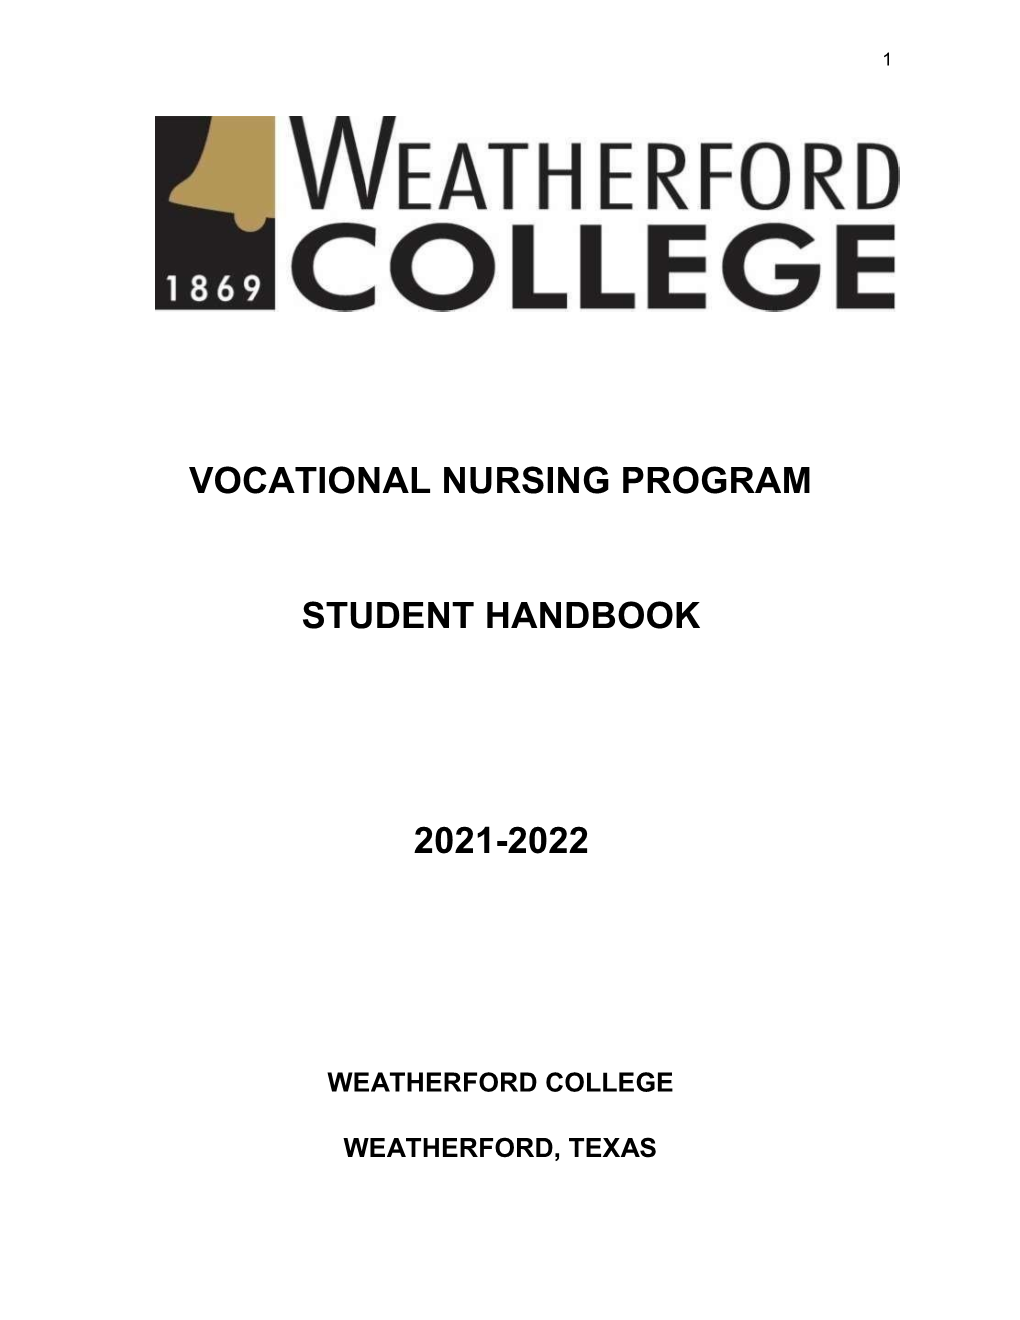 Vocational Nursing Program Student Handbook 2021-2022